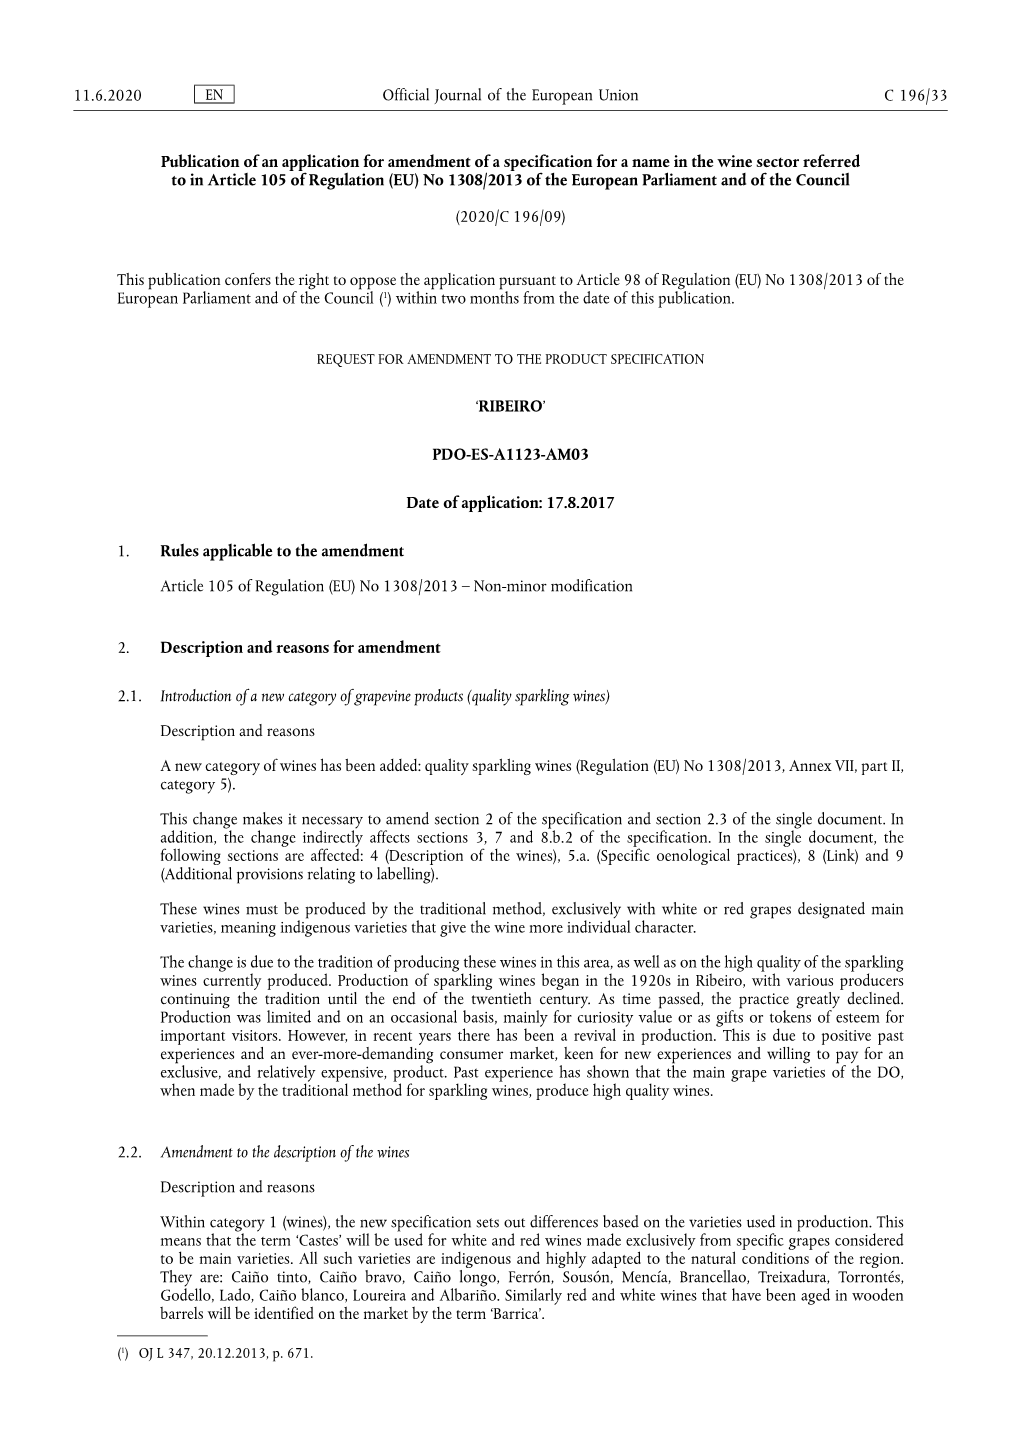 Ribeiro Amendment Proposal EU Publication